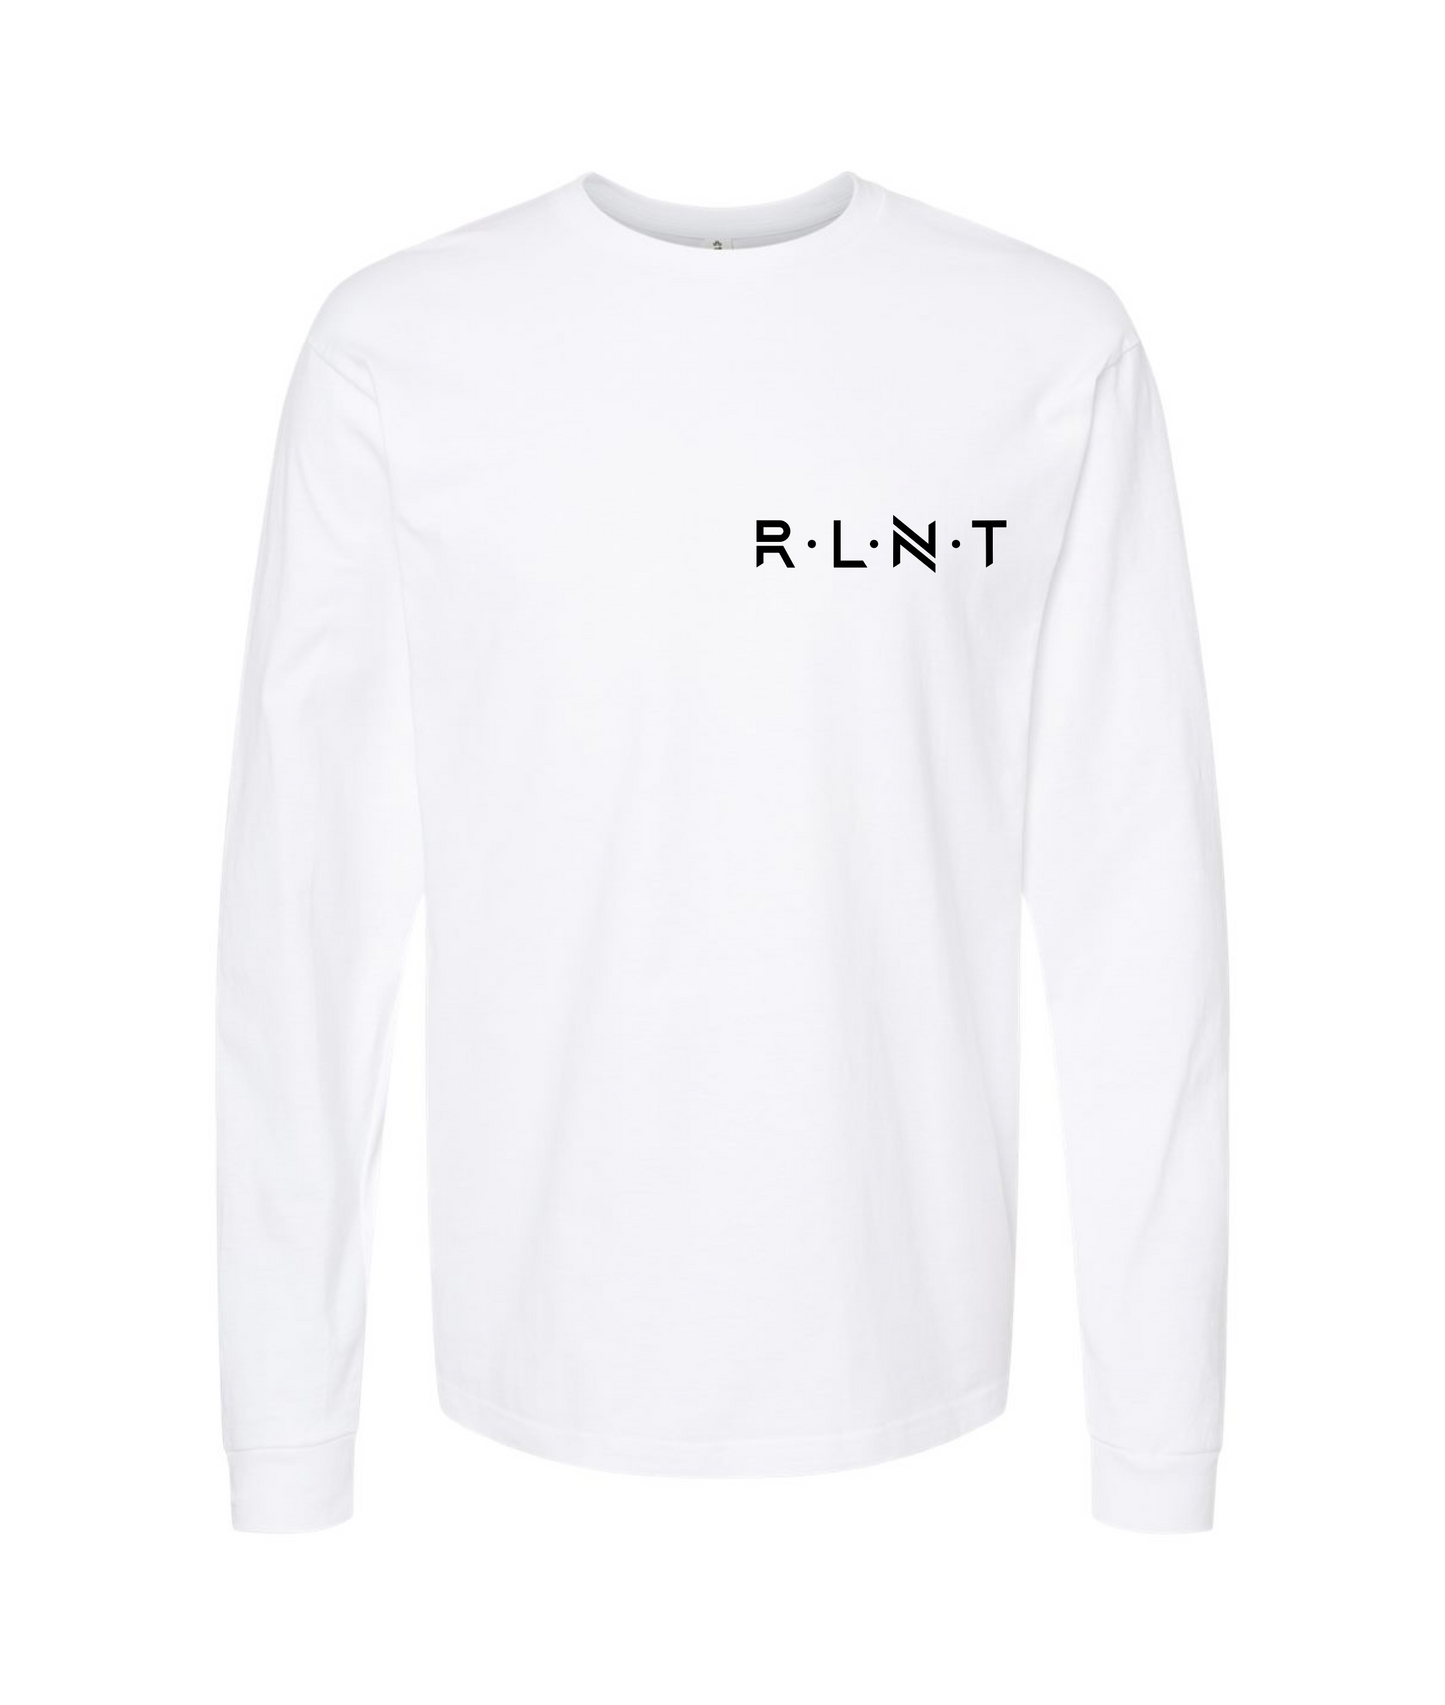 Relent - RLNT - White Long Sleeve T